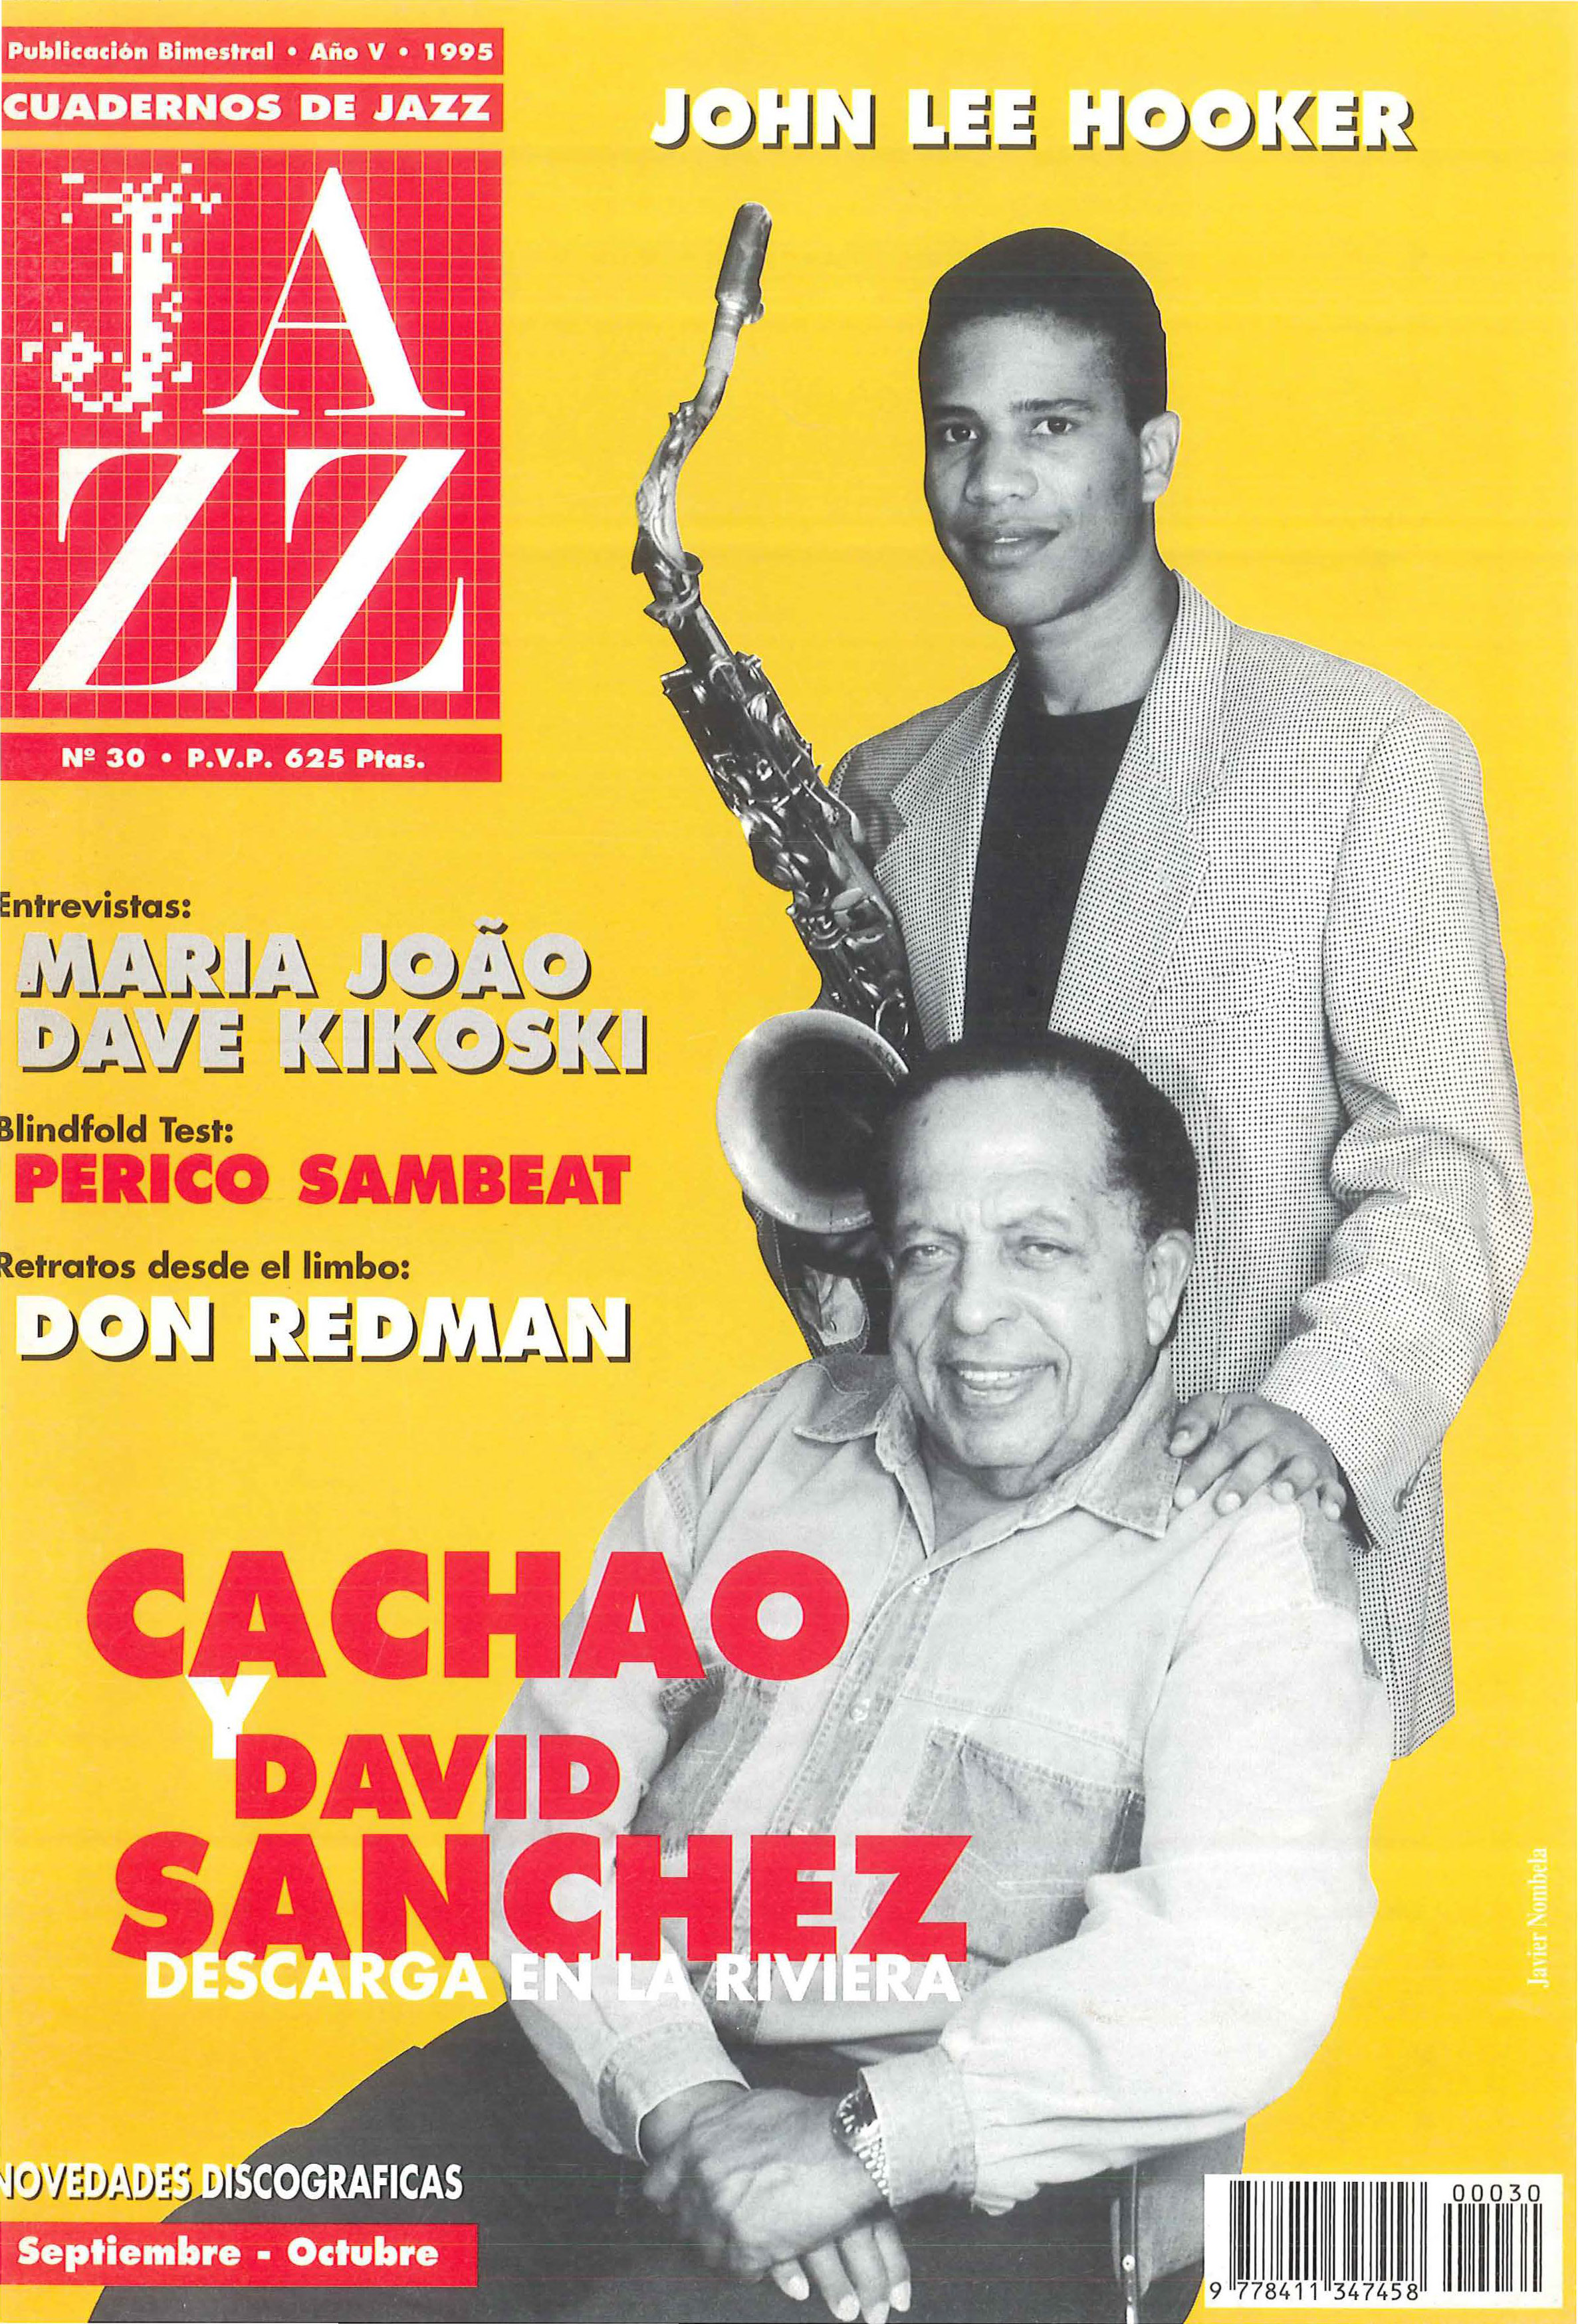 Cubierta del número 30 de la revista Cuadernos de Jazz